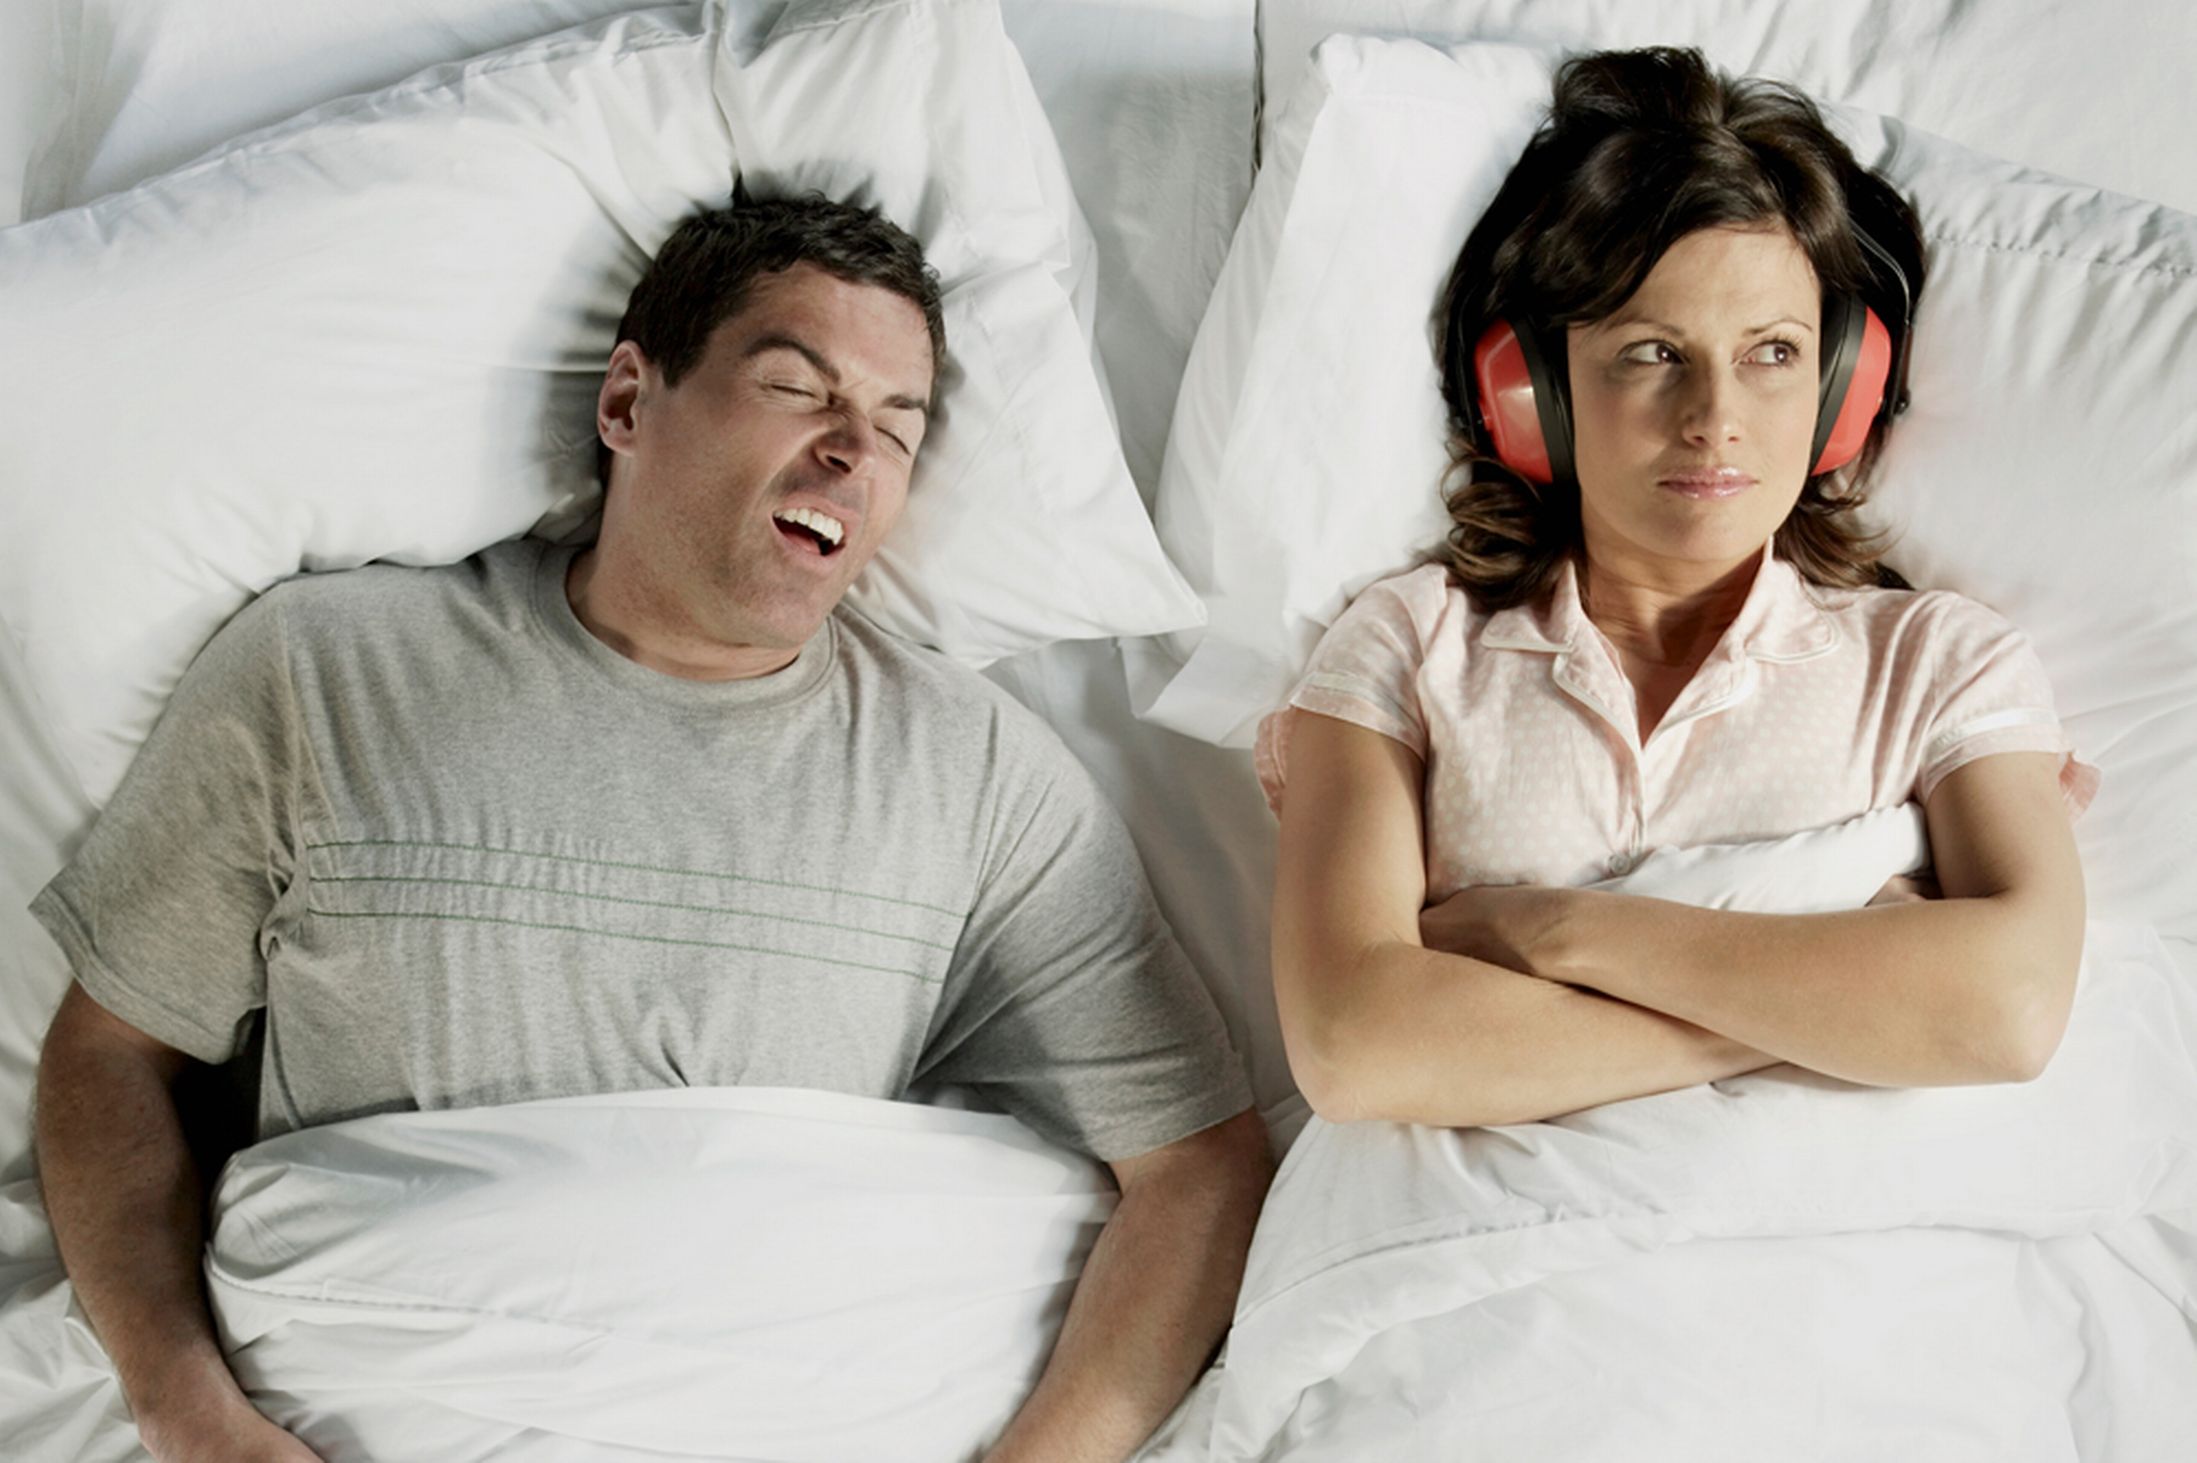 نصائح لوقف الشخير أثناء النوم نهائيًا دون الحاجة إلى أي أدوية أو عمليات جراحية